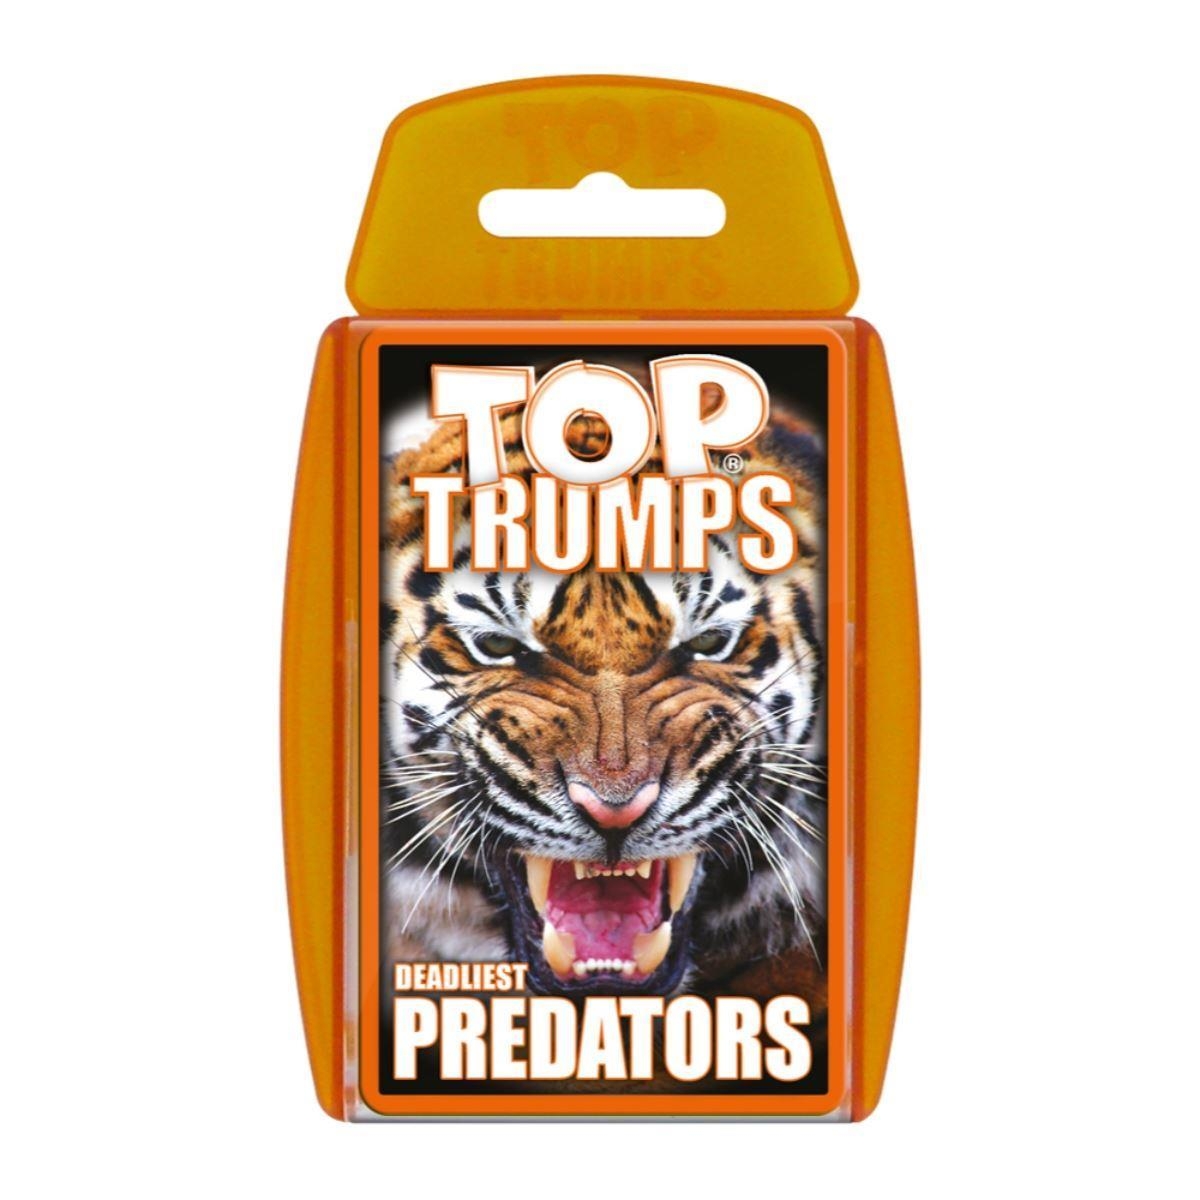 Top Trumps Deadliest Predators – Red Rock Games